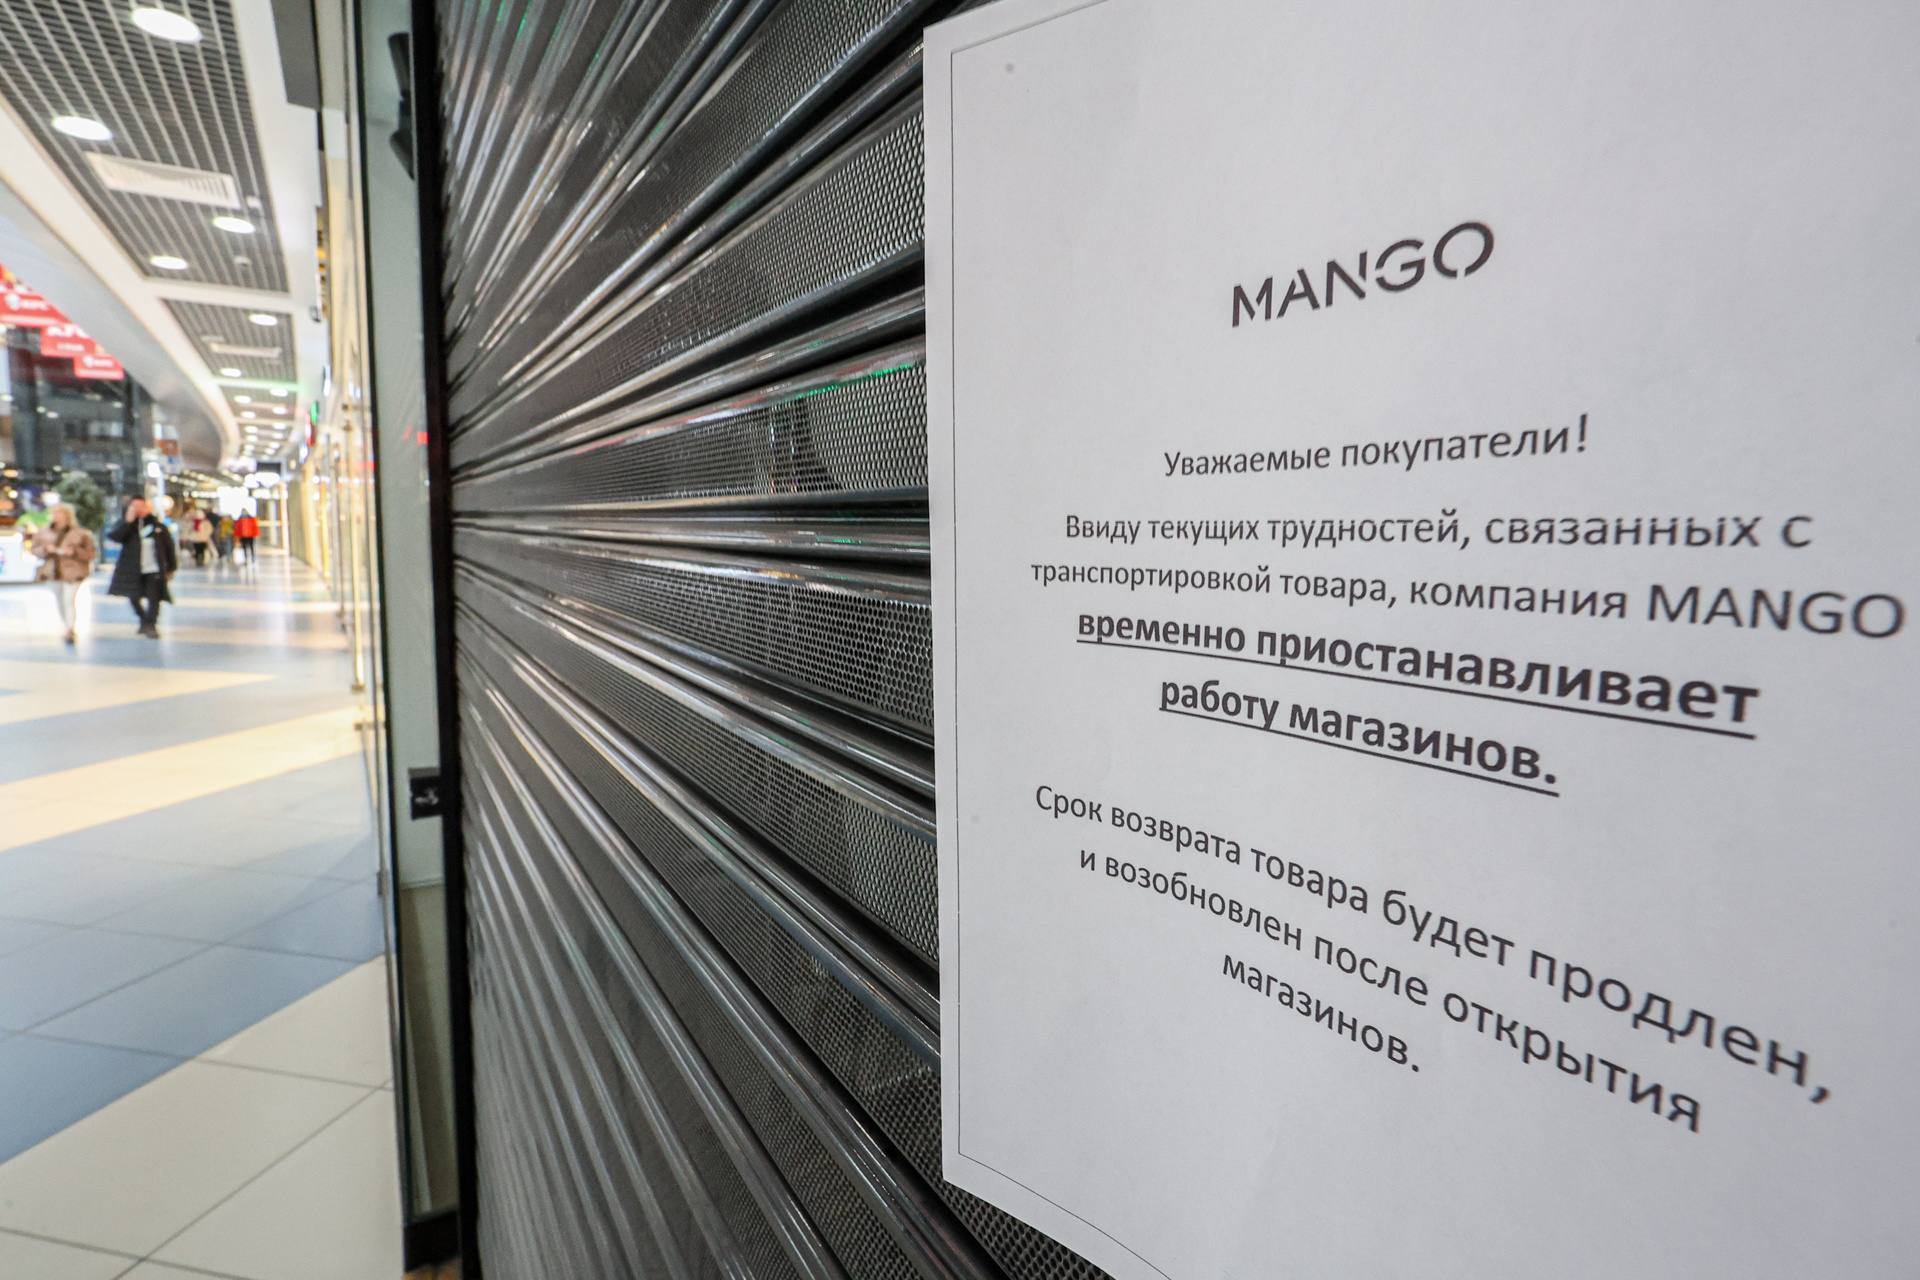 Сотрудники Mango заботливо вывесили объявление о приостановке работы